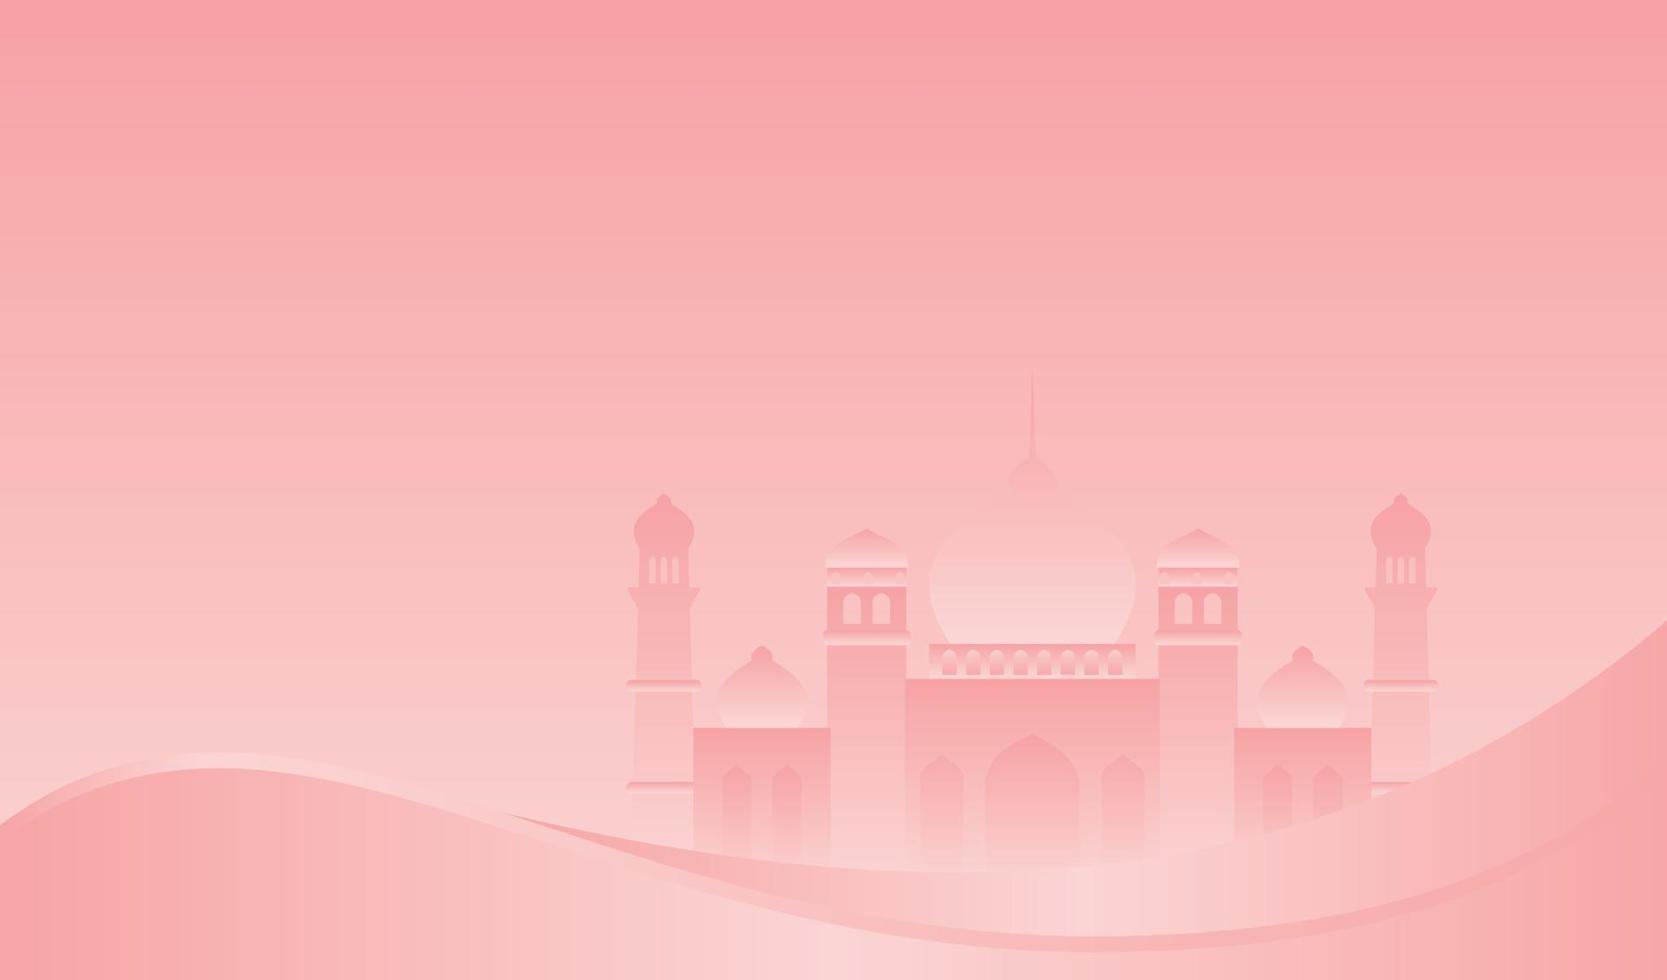 islamisches hintergrunddesign für ramadan kareem und eid mubarak oder eid al adha vektor